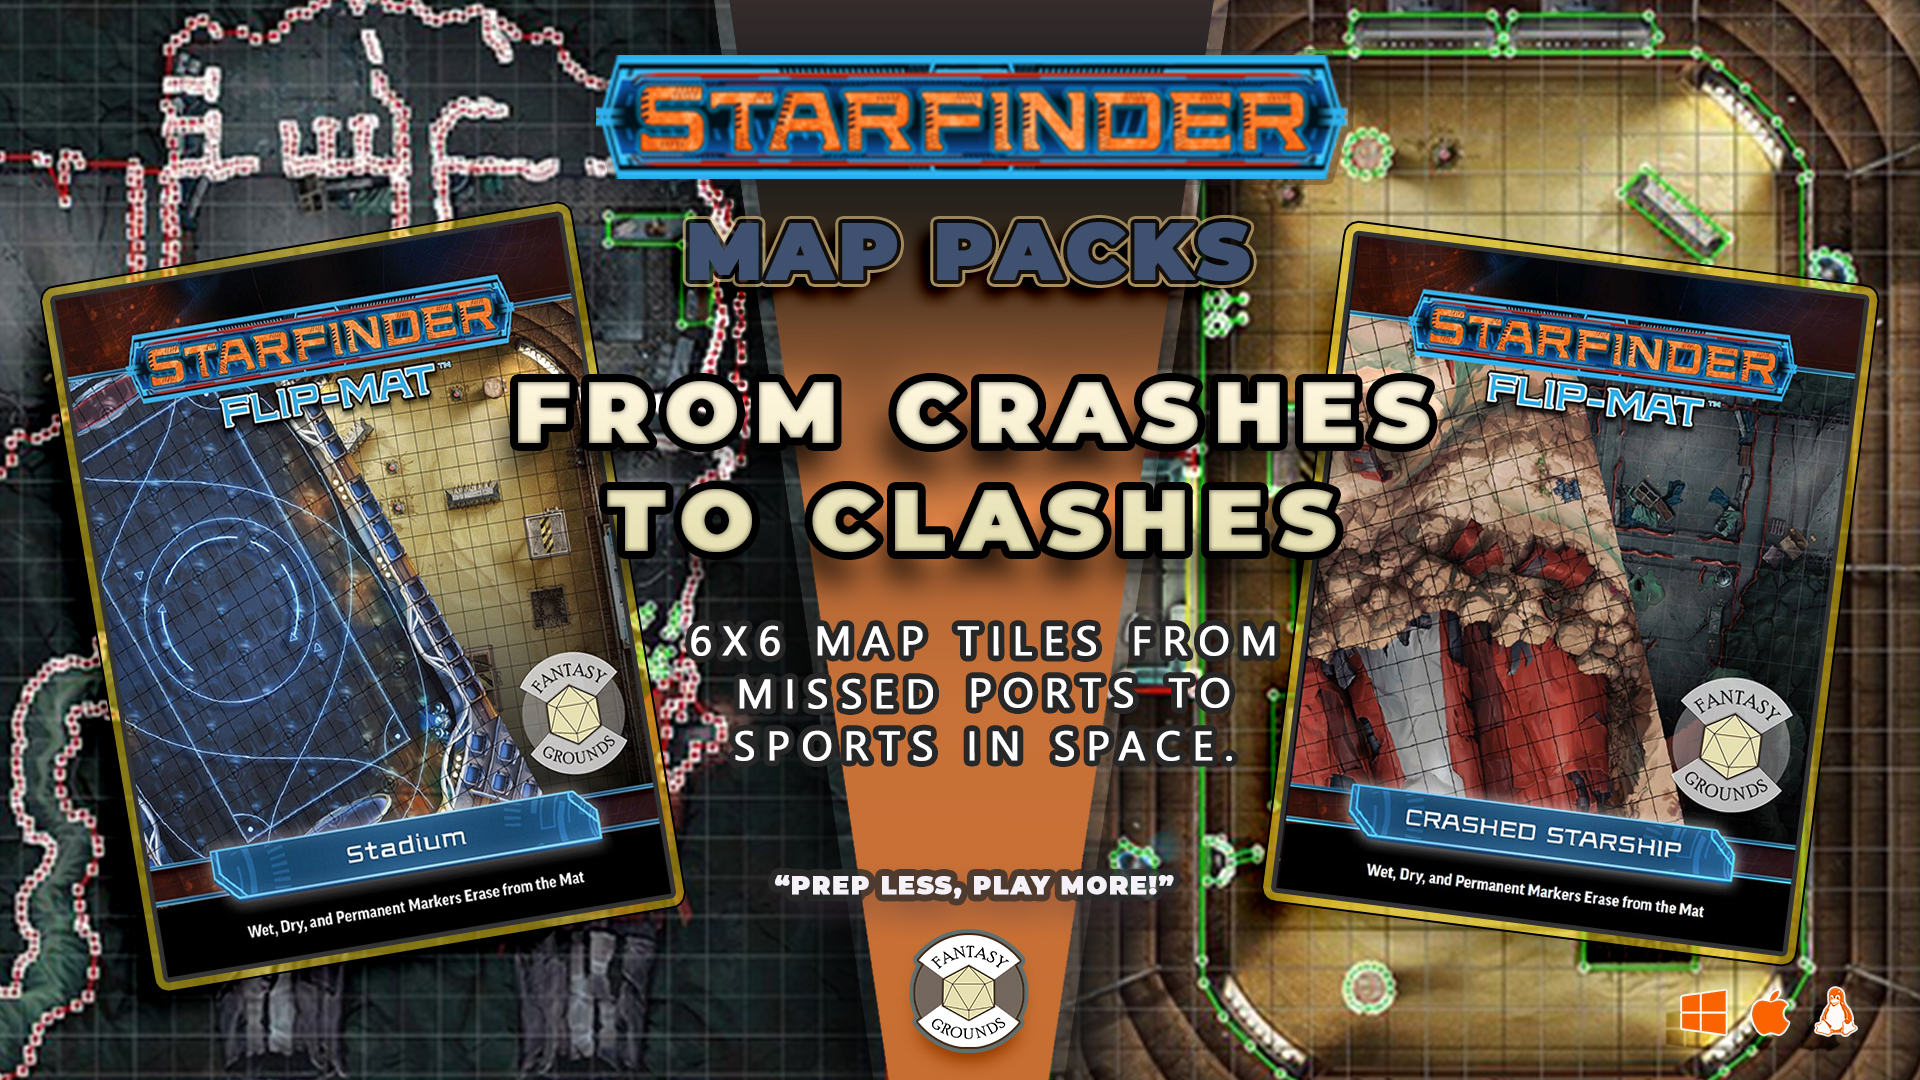 STARFINDER MAP PACKS.jpg